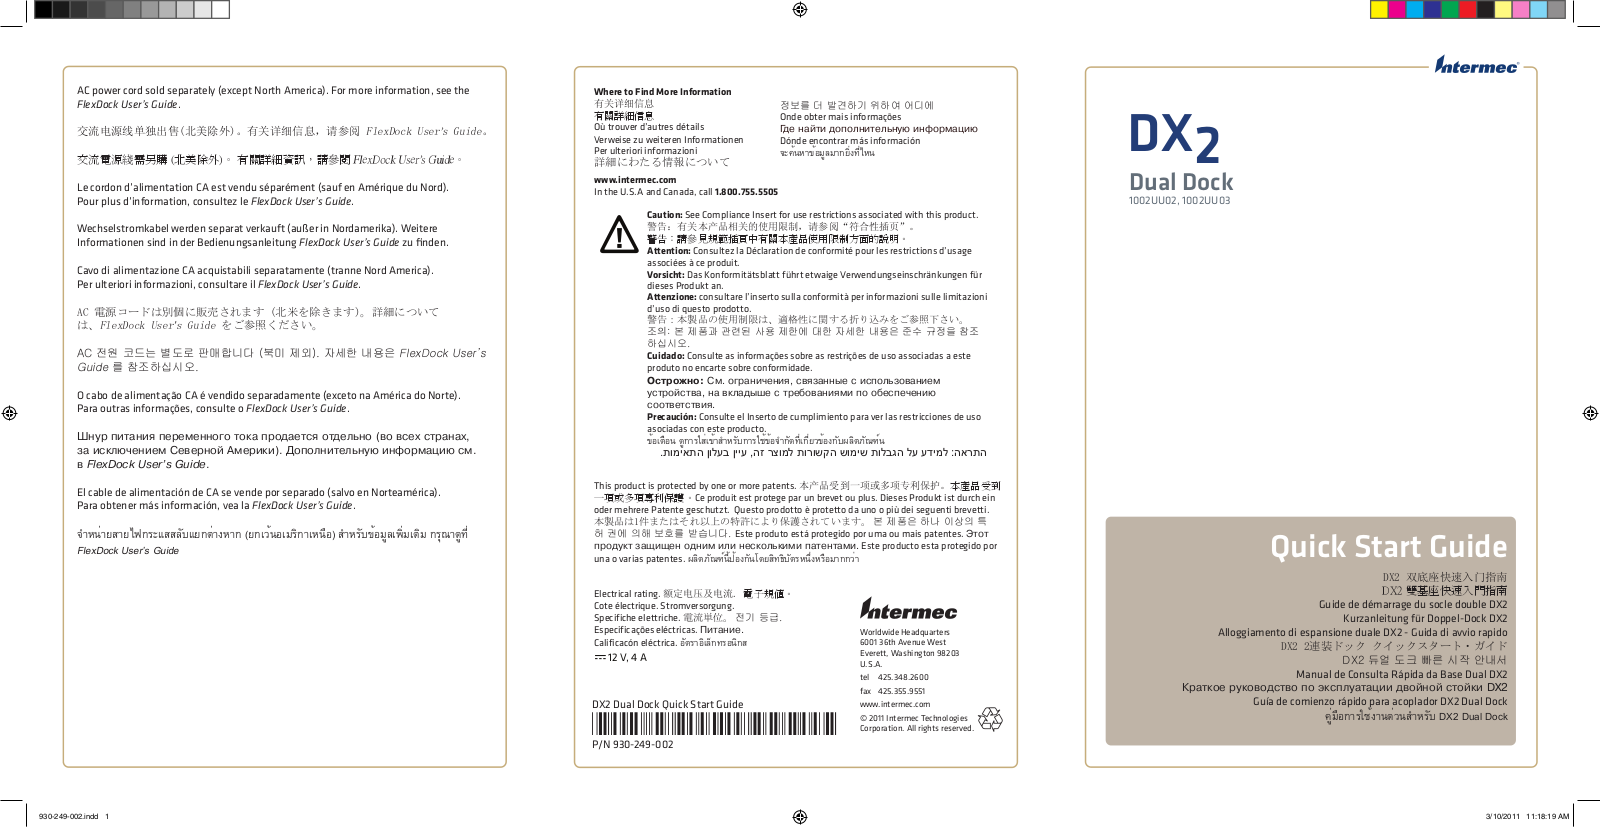 Intermec DX2 Start Guide